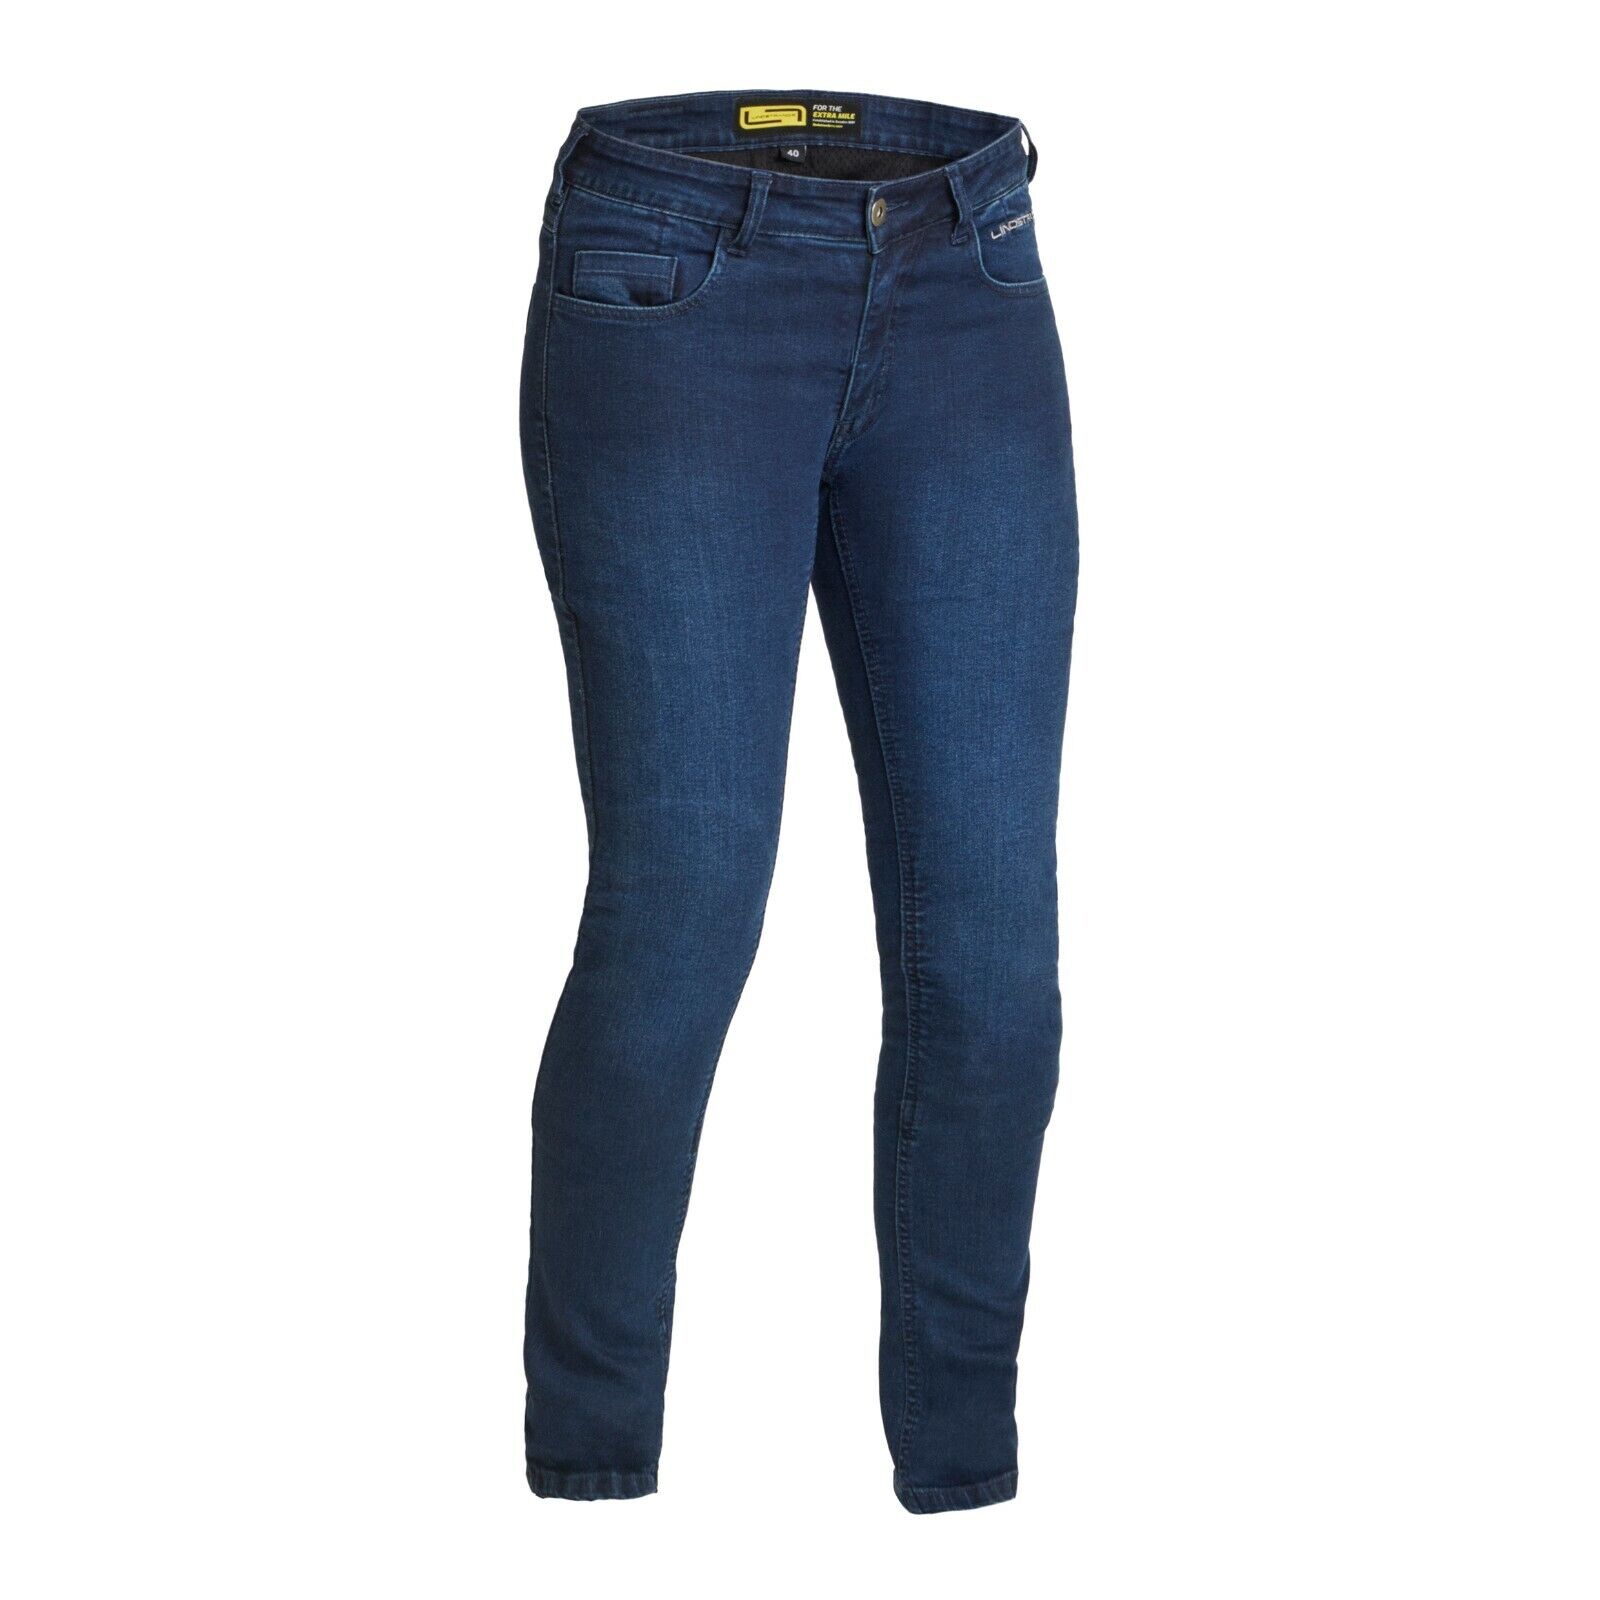 Lindstrands Women's Motorcycle Denim Jeans RONE Blue HI-ART Slim-Fit Stretch